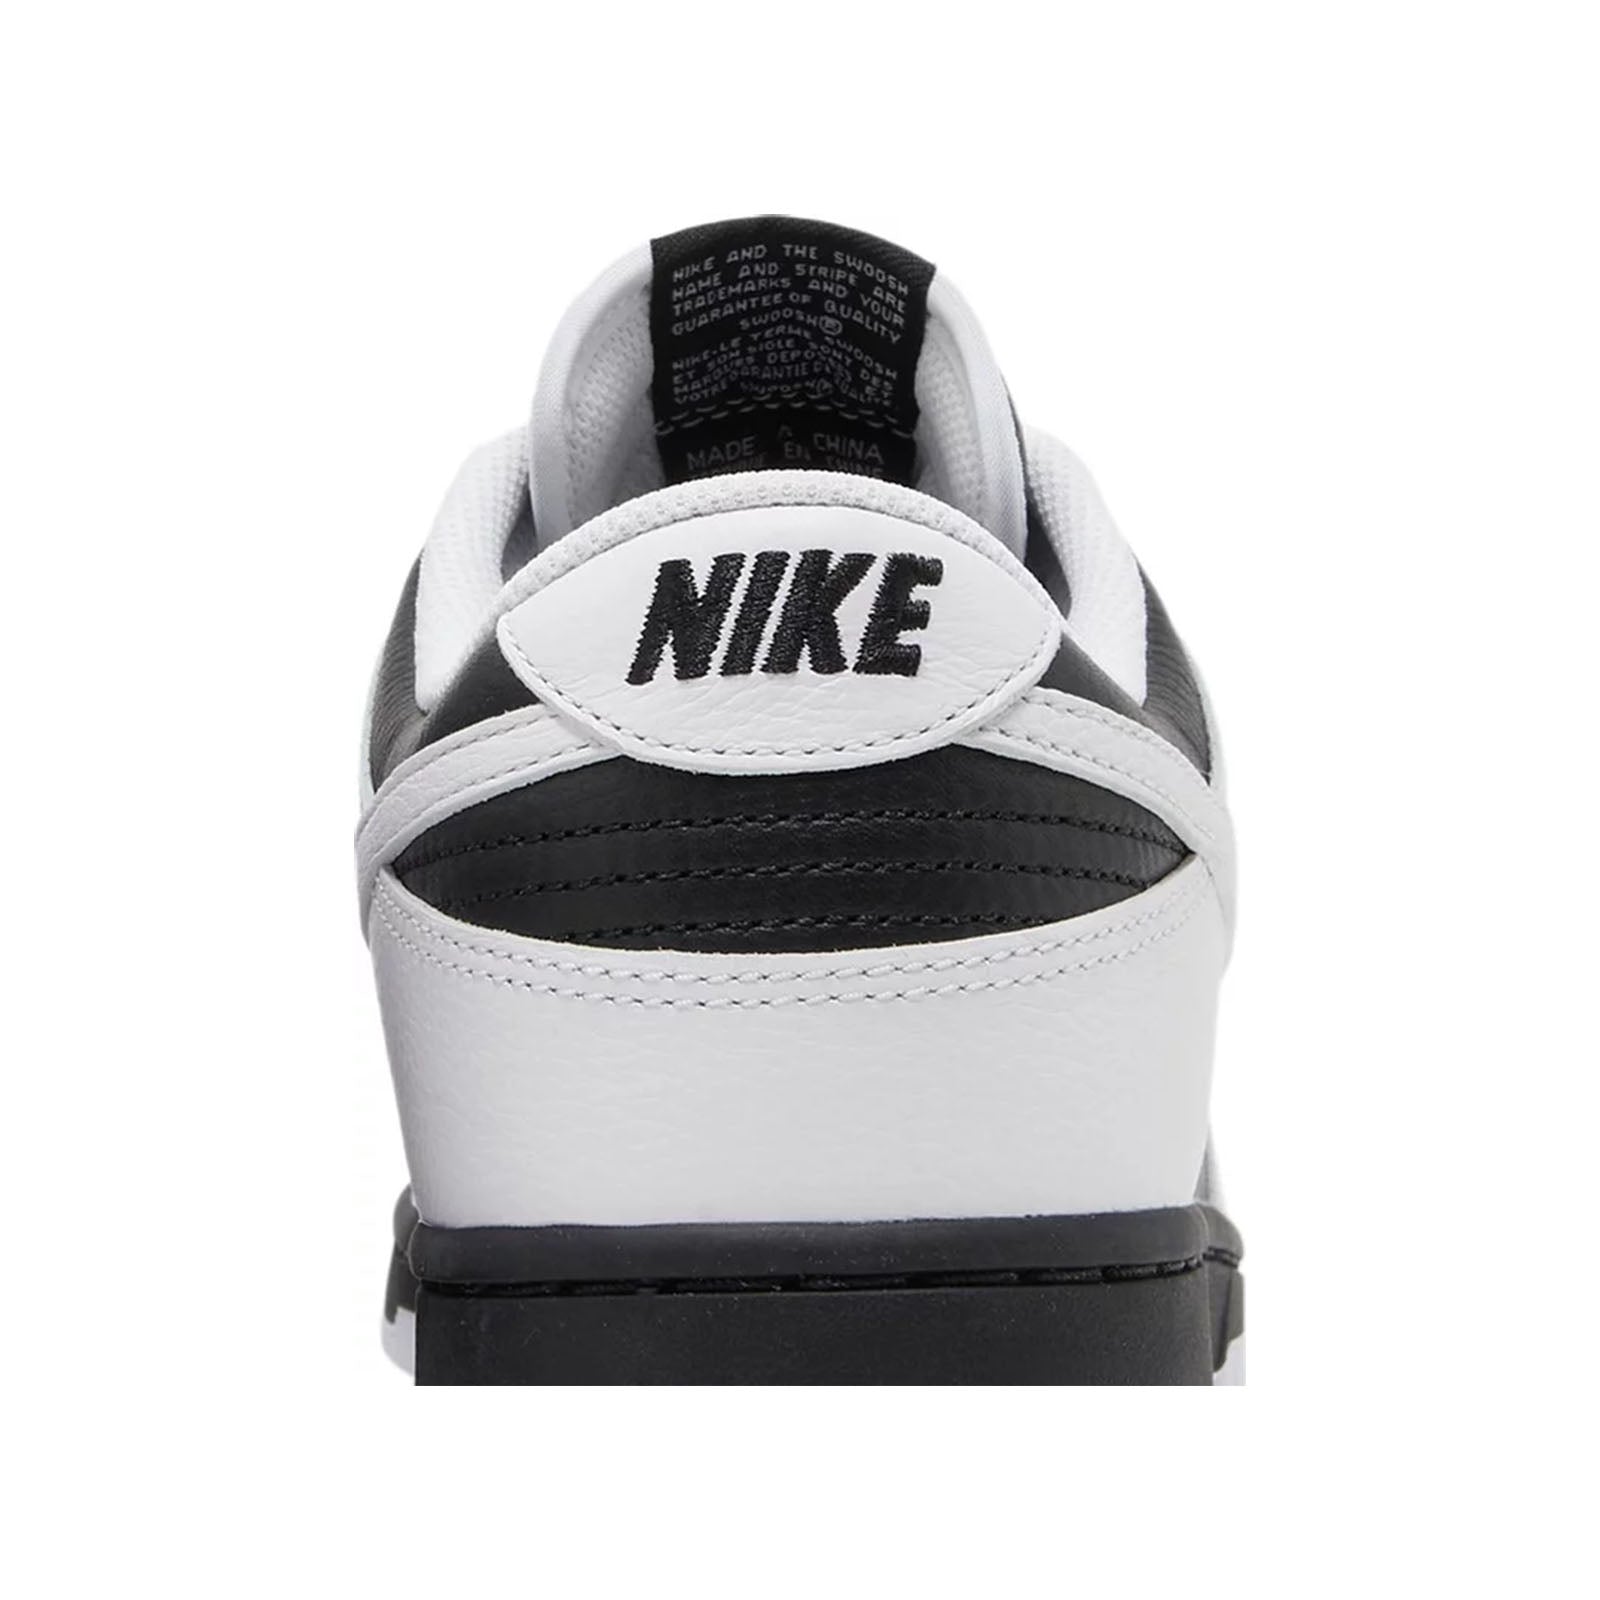 Nike negras talla 21